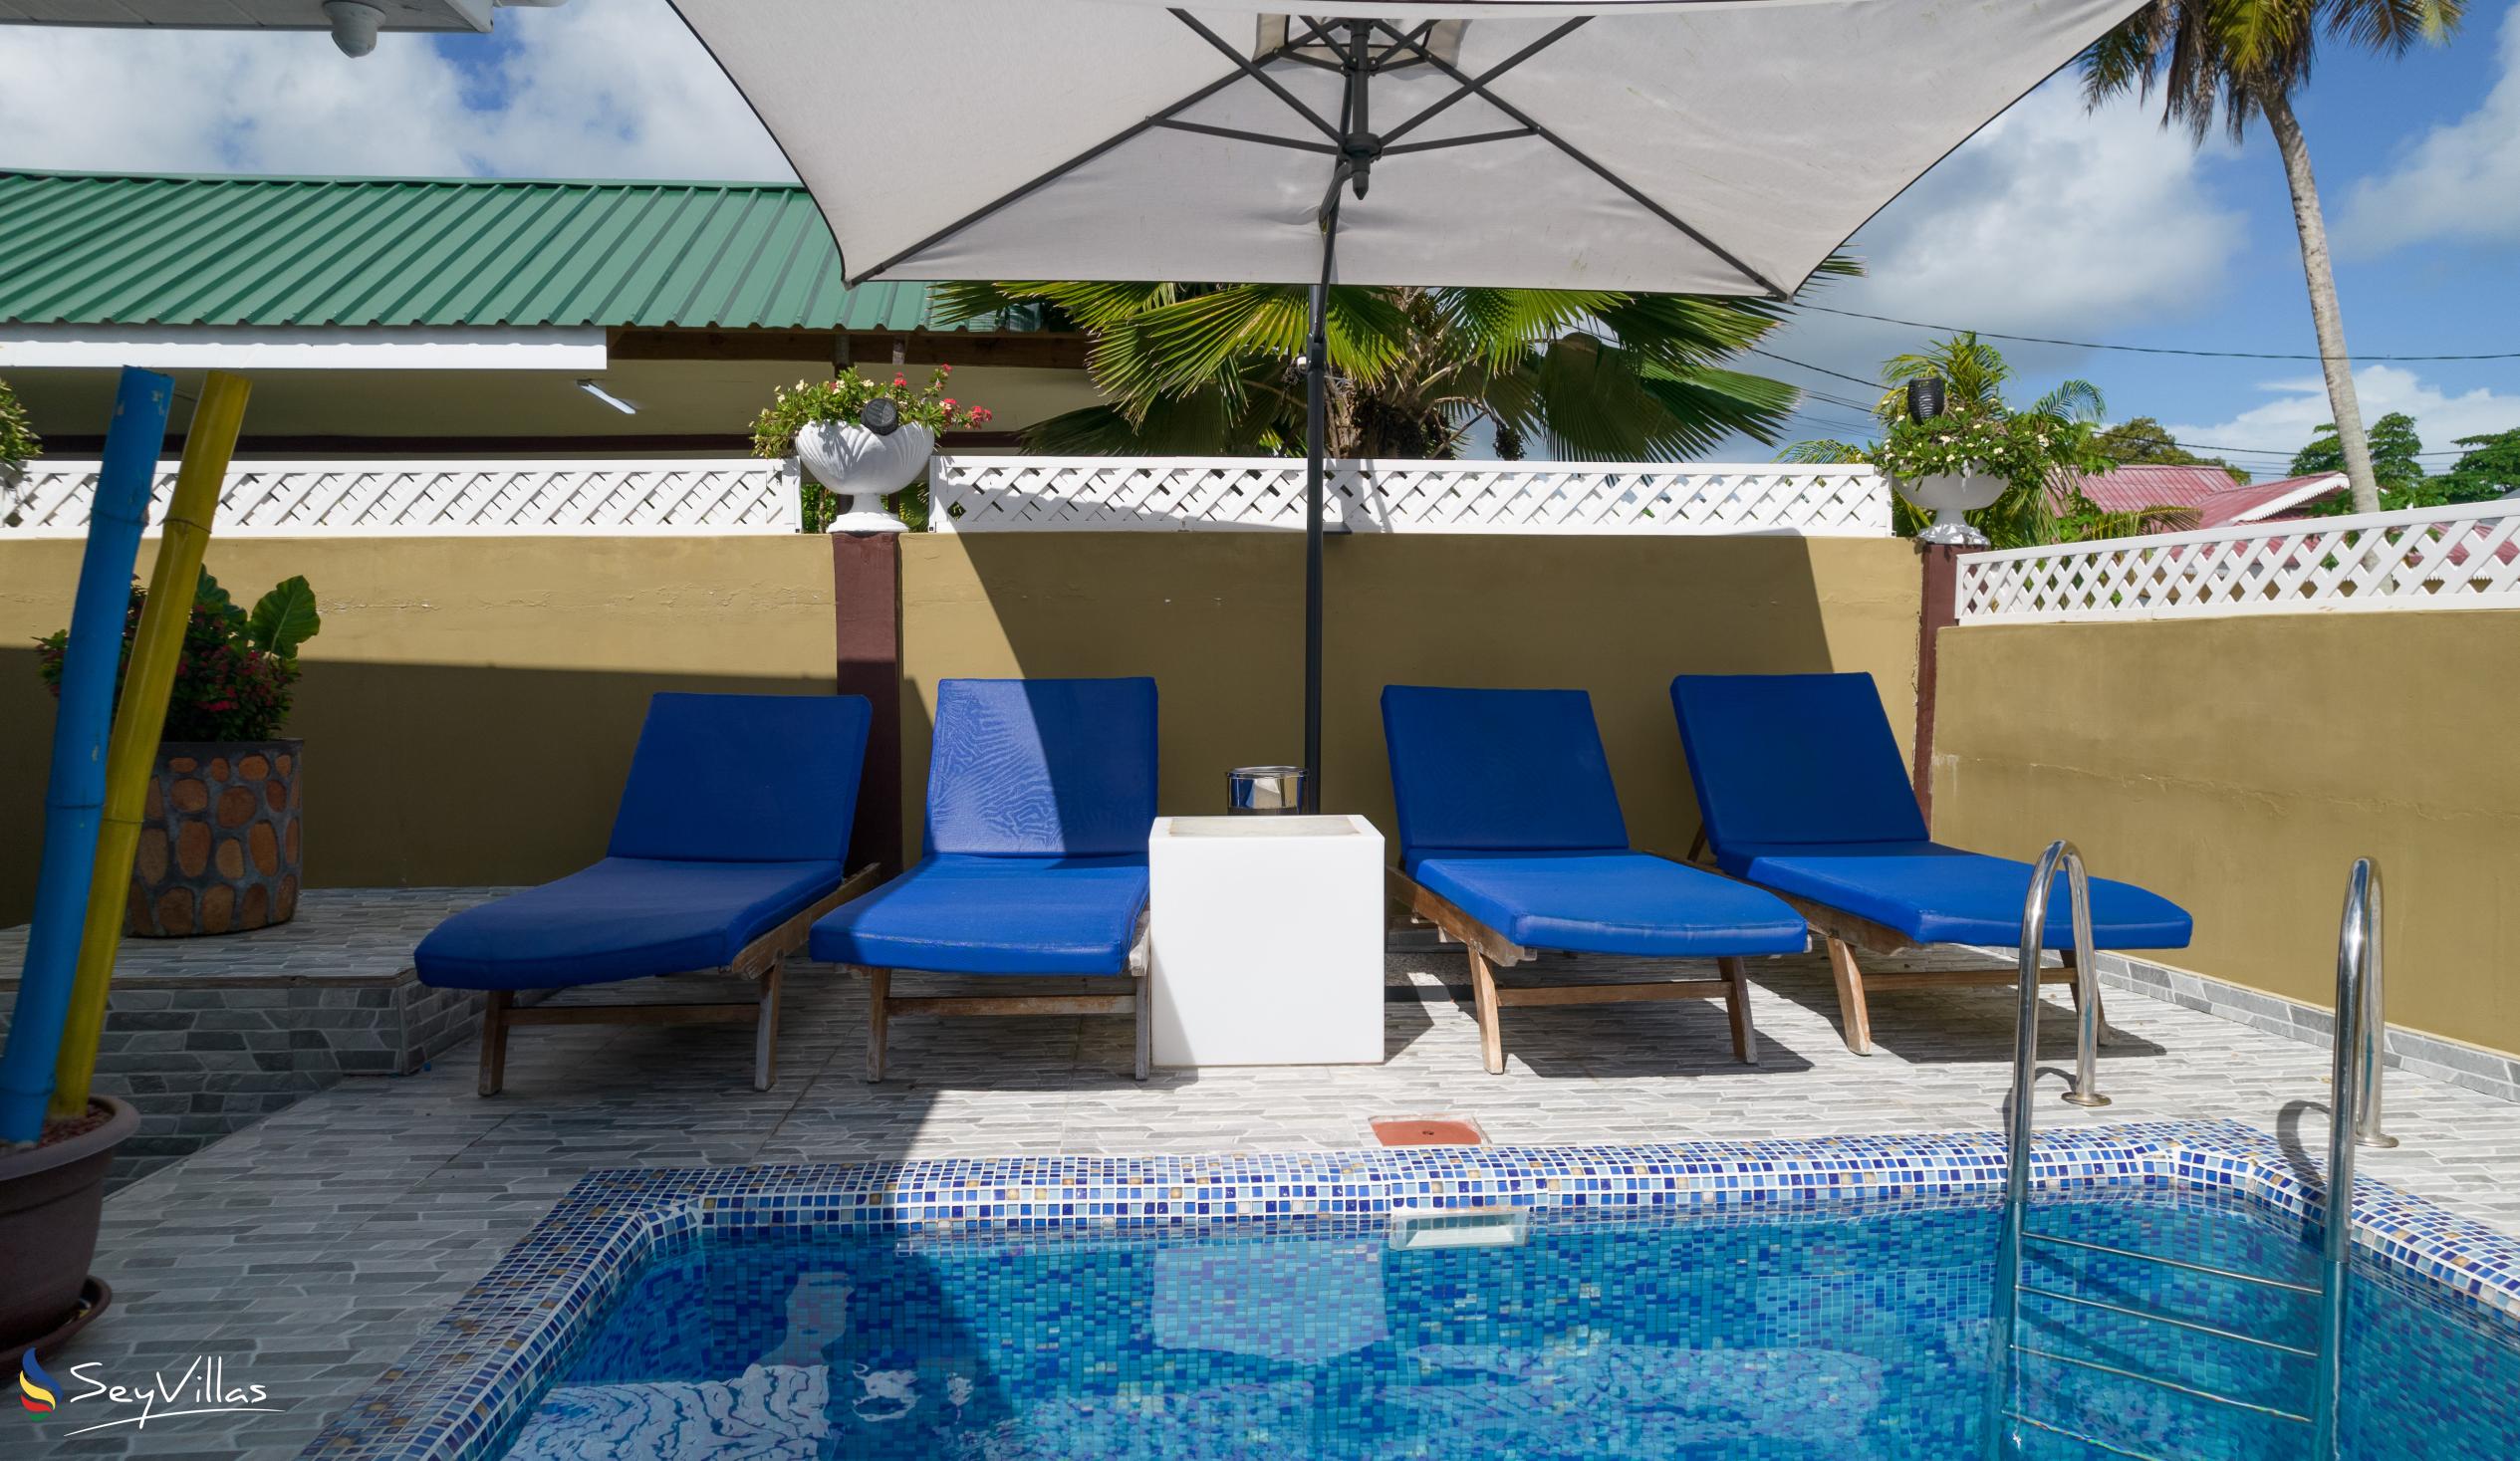 Photo 4: Happy Stay Villa - Outdoor area - Praslin (Seychelles)